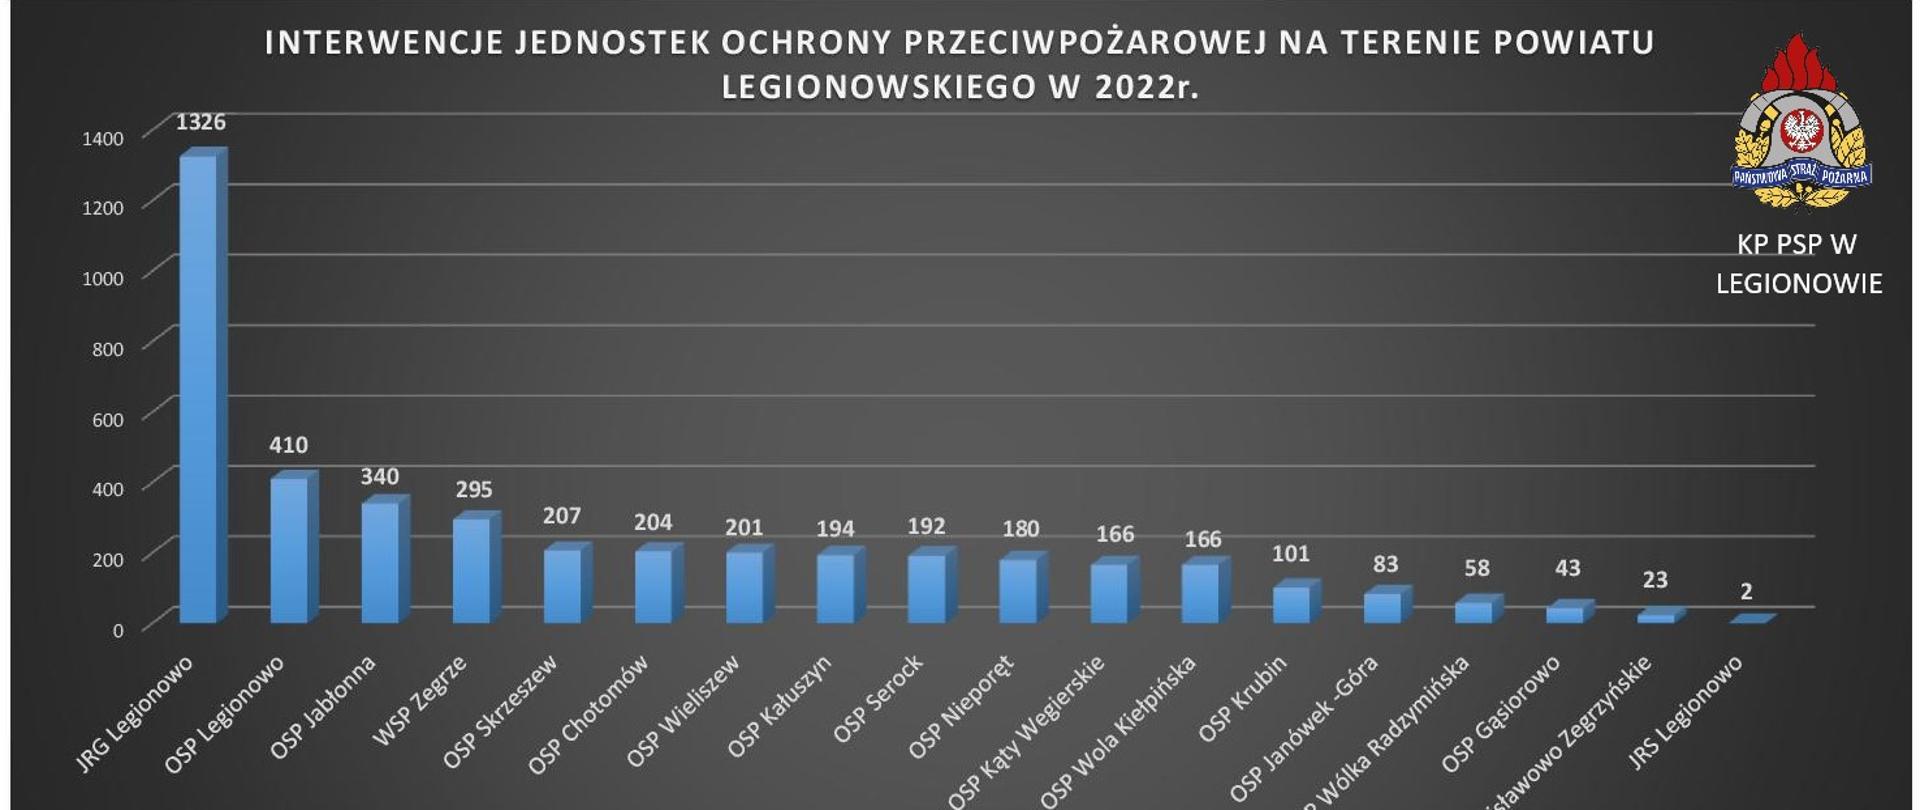 Statystyczne podsumowanie działań Jednostek Ochrony Przeciwpożarowej na terenie powiatu legionowskiego w 2022 roku